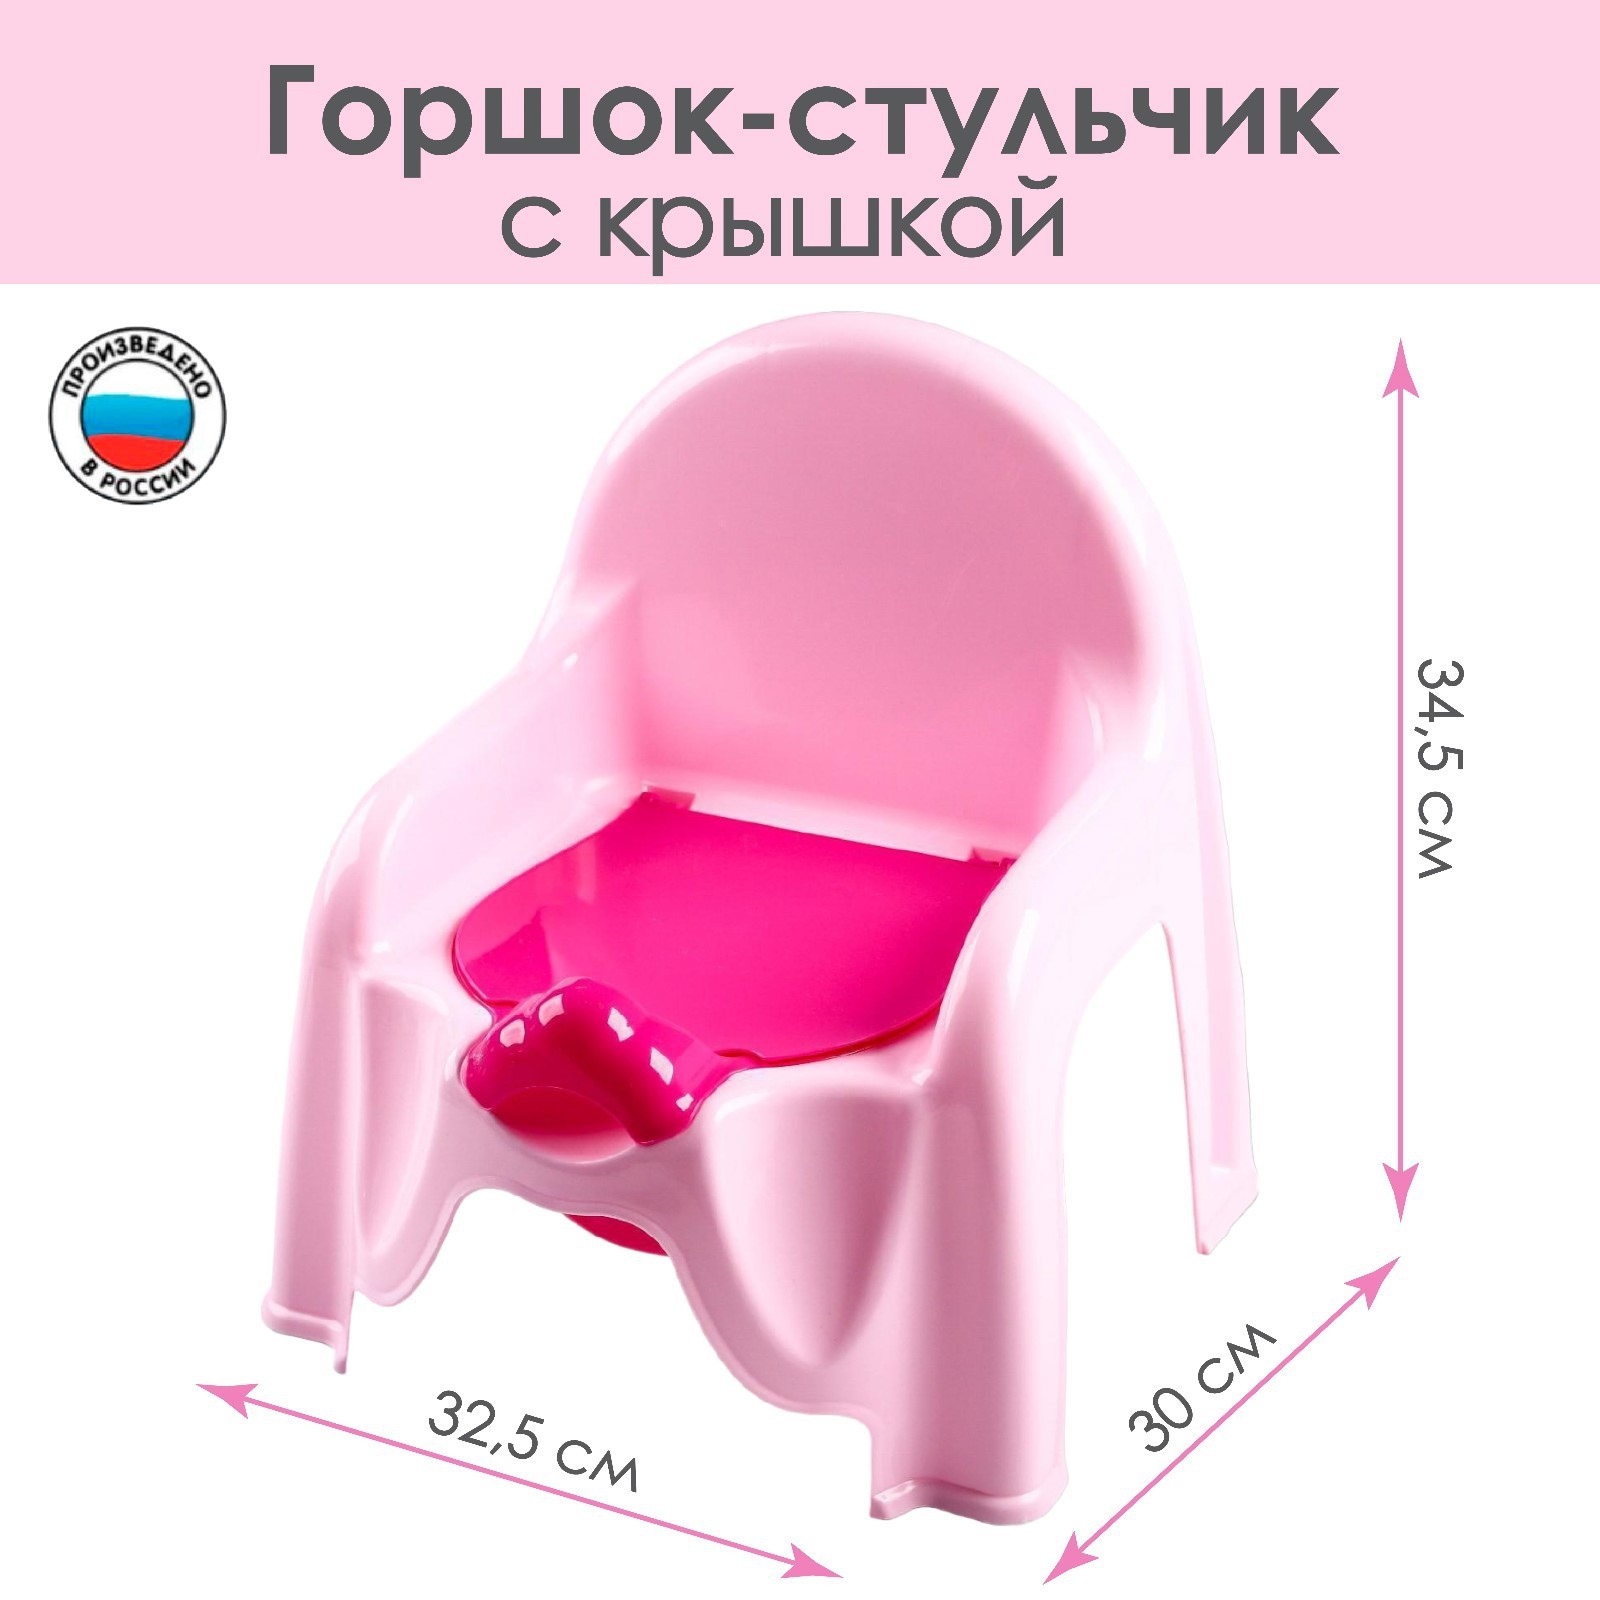 Горшок-стульчик м1528 розовый альтернатива